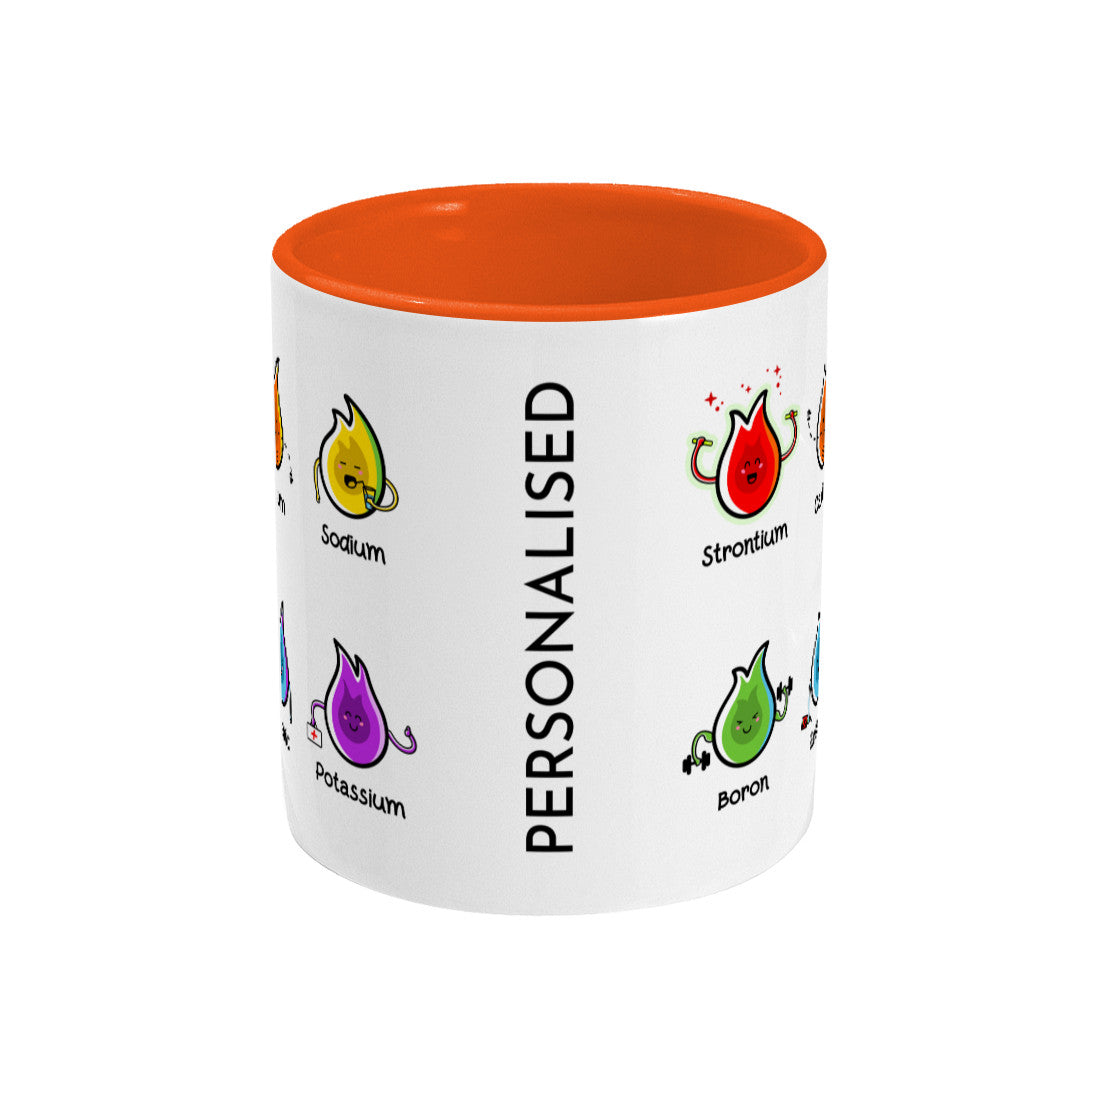 Flaming Elements Pun Ceramic Mug